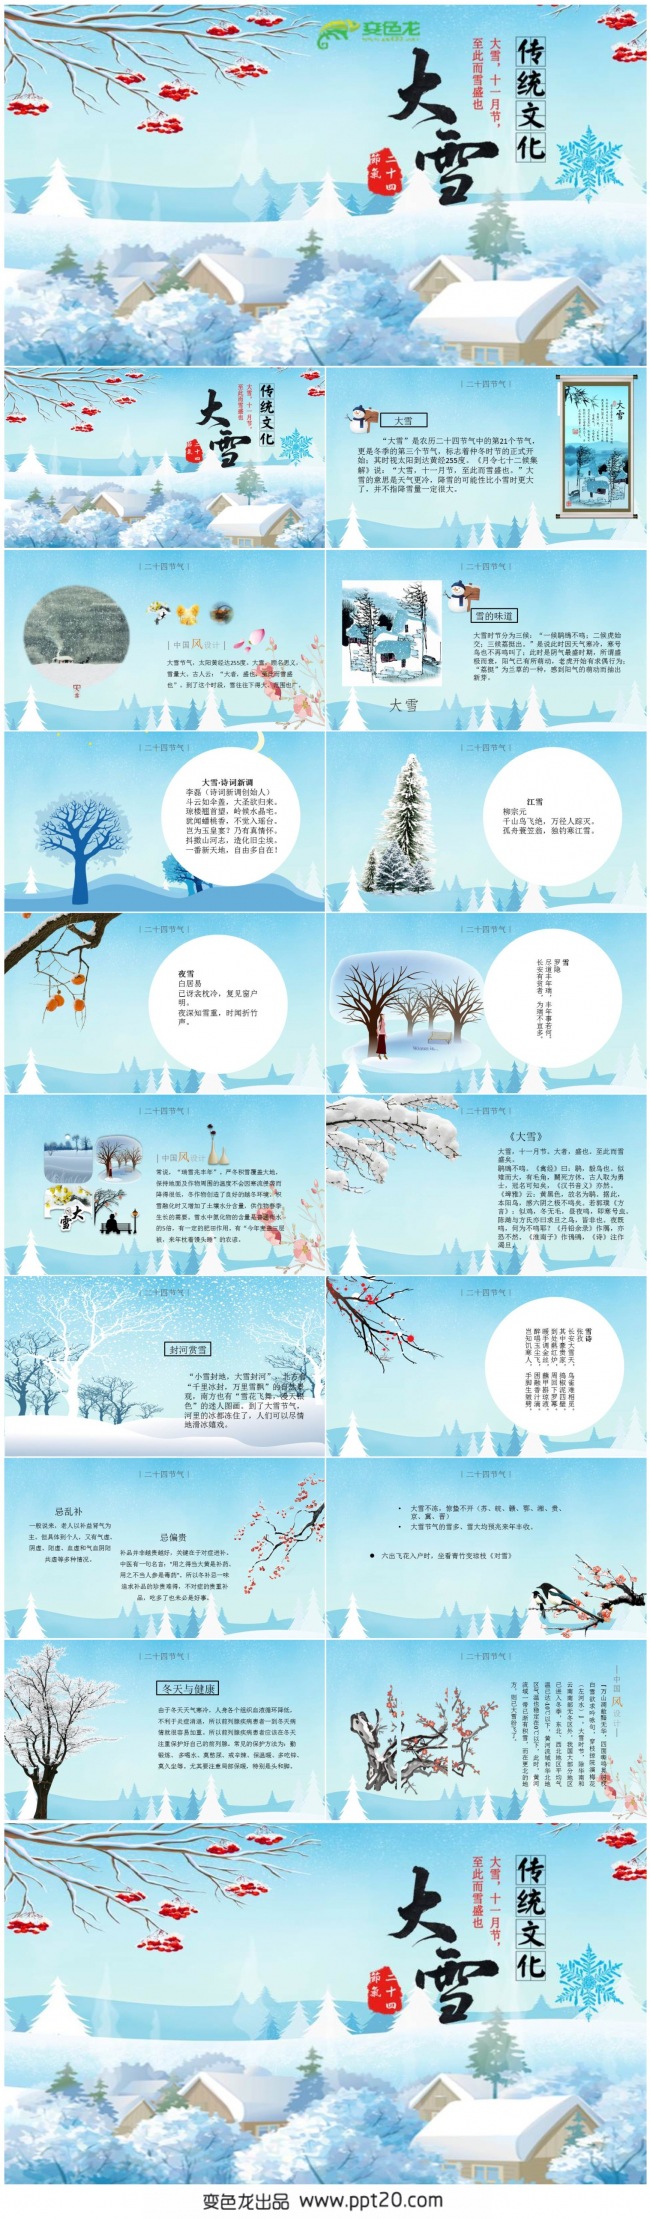 【大雪】传统文化“二十四节气”主题系列PPT动态演示模板